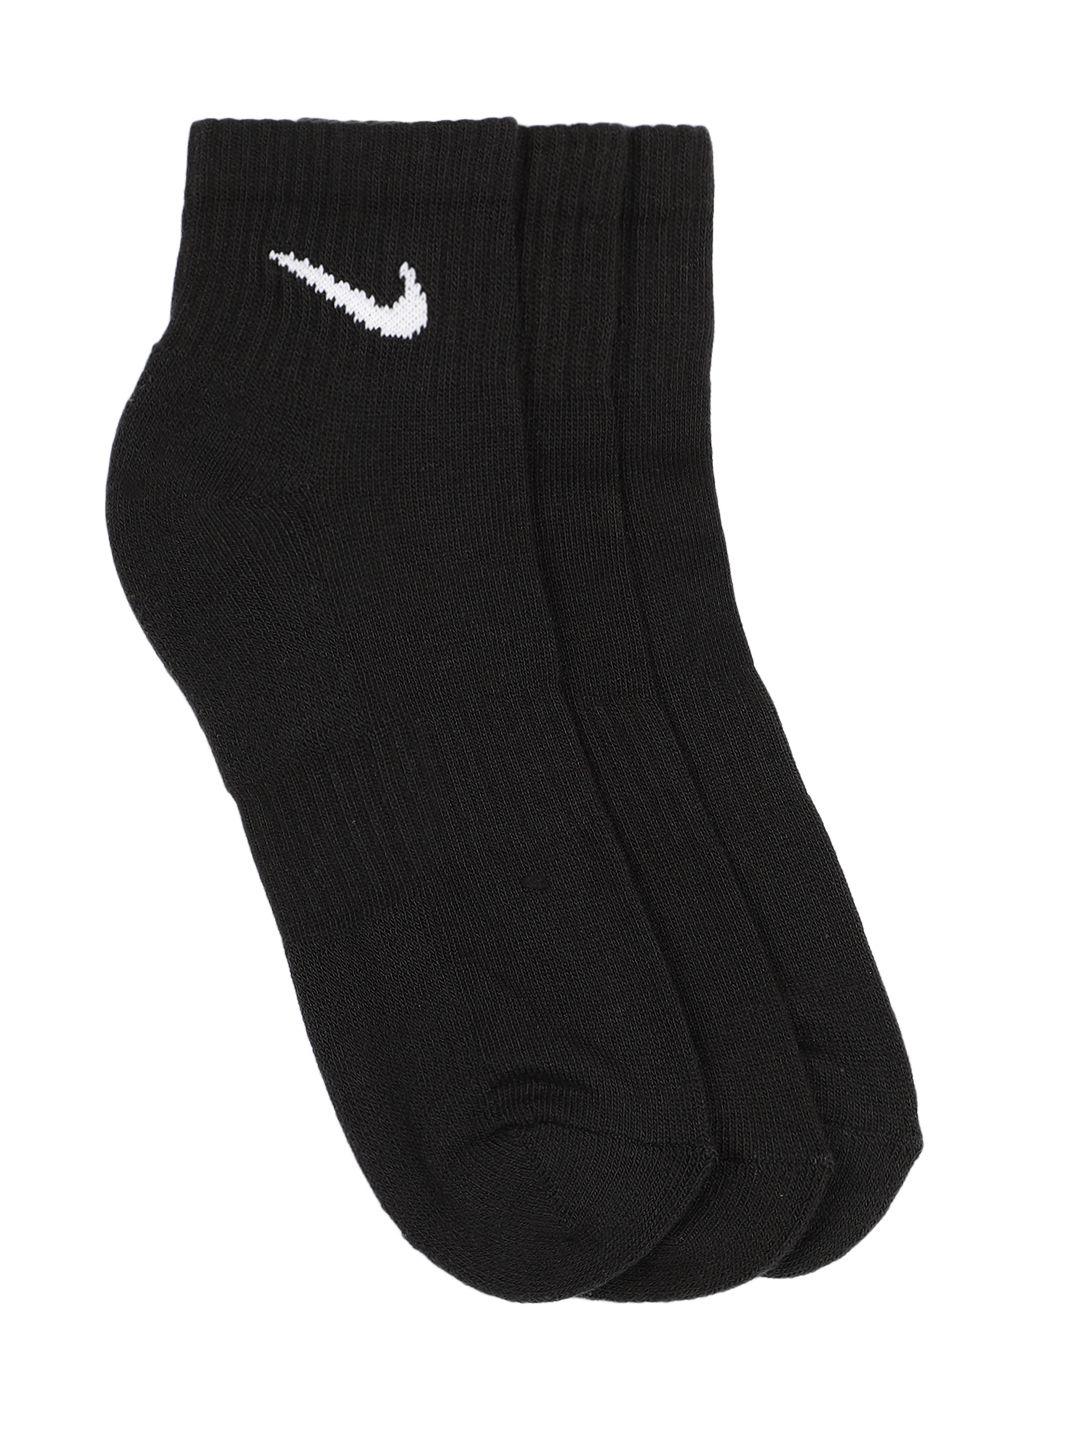 nike-men-pack-of-3-black-everyday-cushion-ankle-length-socks